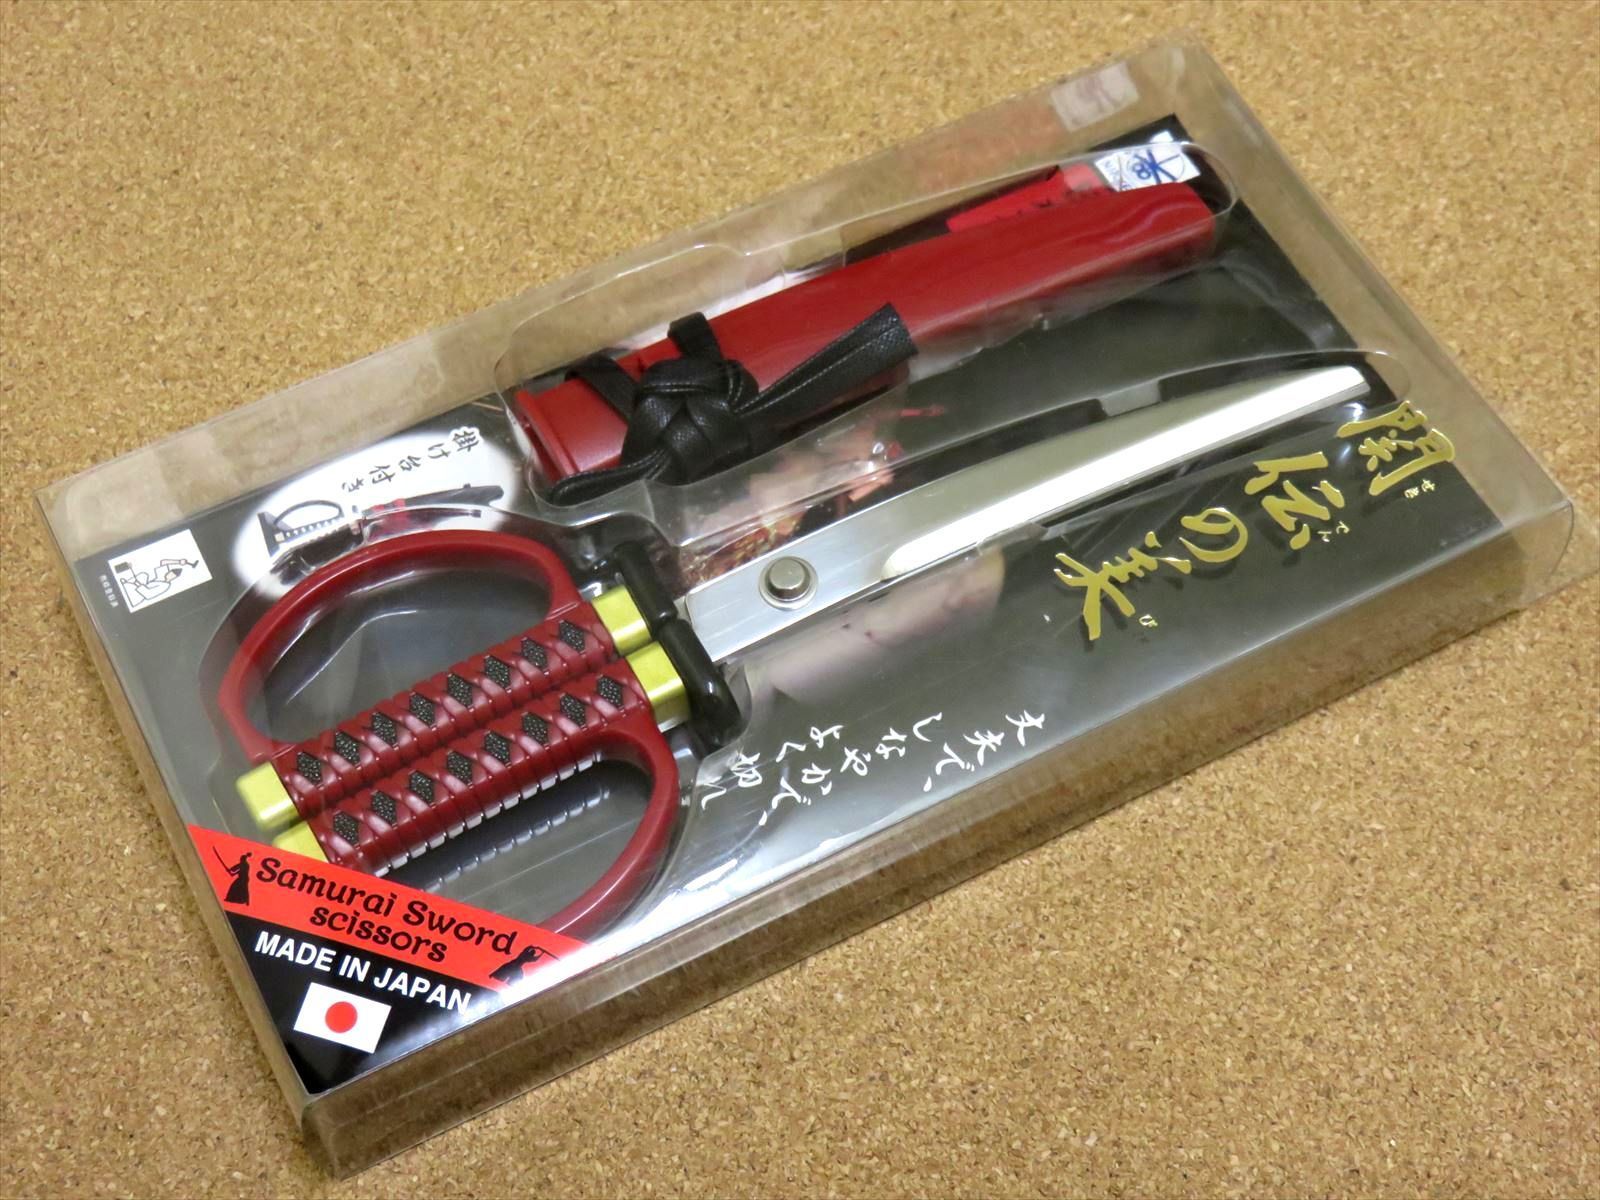 関の刃物 日本刀鋏 赤 鞘付き 掛け台付き インテリアはさみ 日本刀刃紋ハサミ 関の刃物SKKカトラリー メルカリ